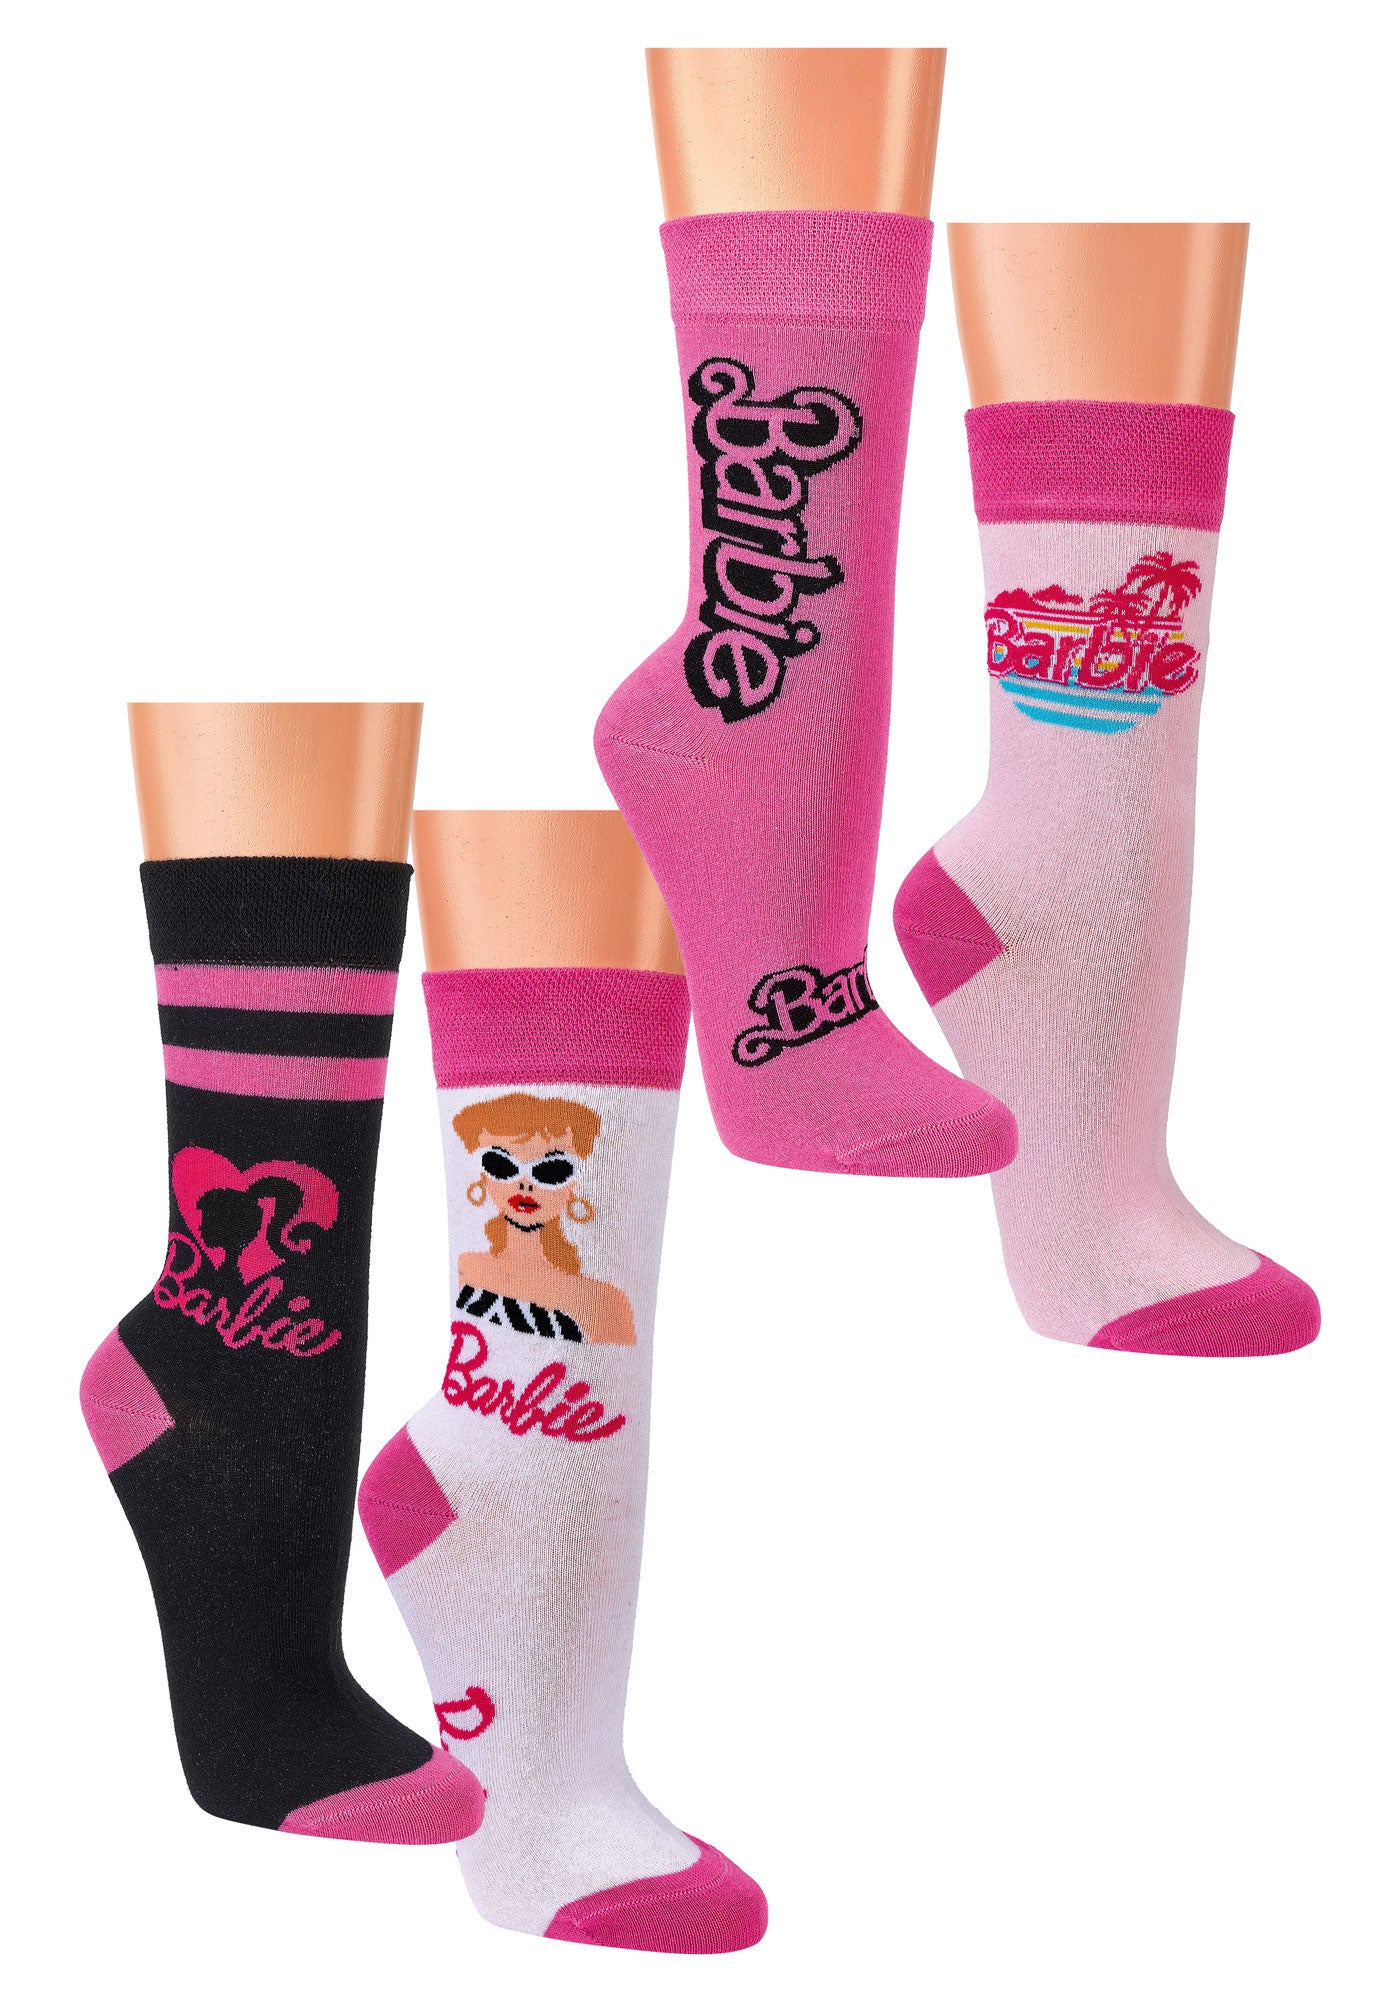 Barbie Socken mit verschiedenen Motiven in schwarz, weiß und pink